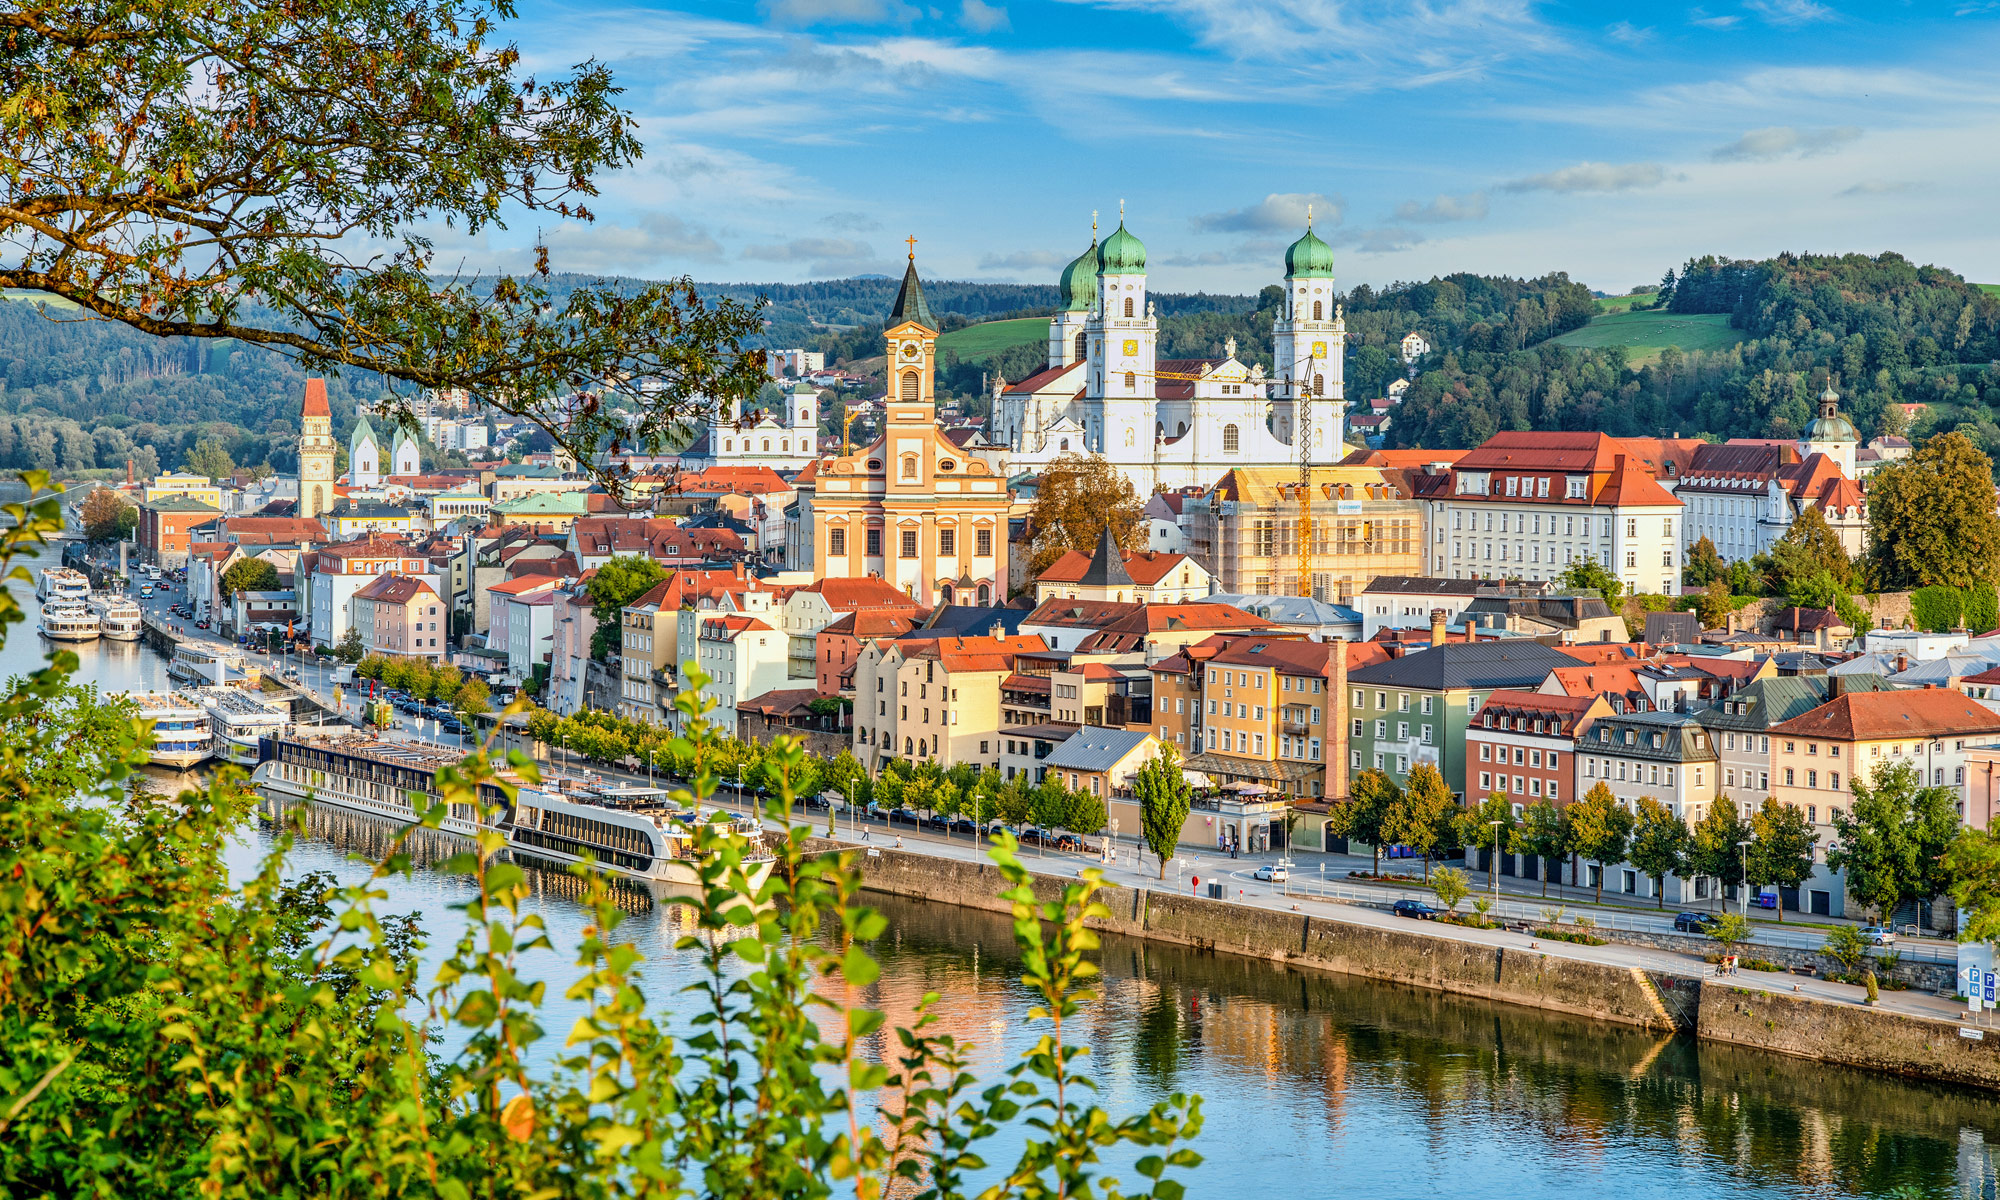 Flusskreuzfahrt nach Passau